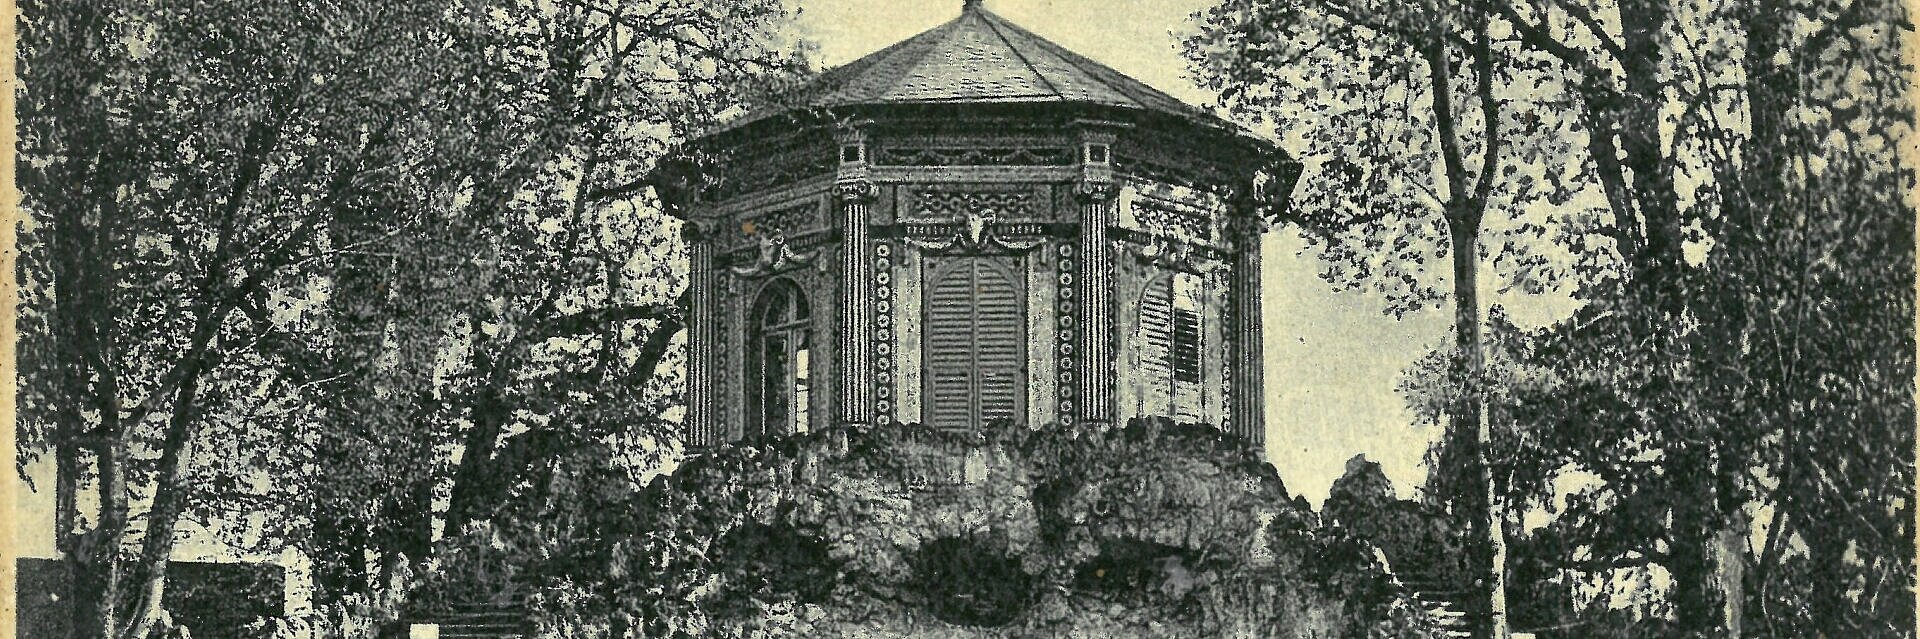 Historische Ansichtskarte des Schneckenhauses im Rokokogarten Veitshöchheim